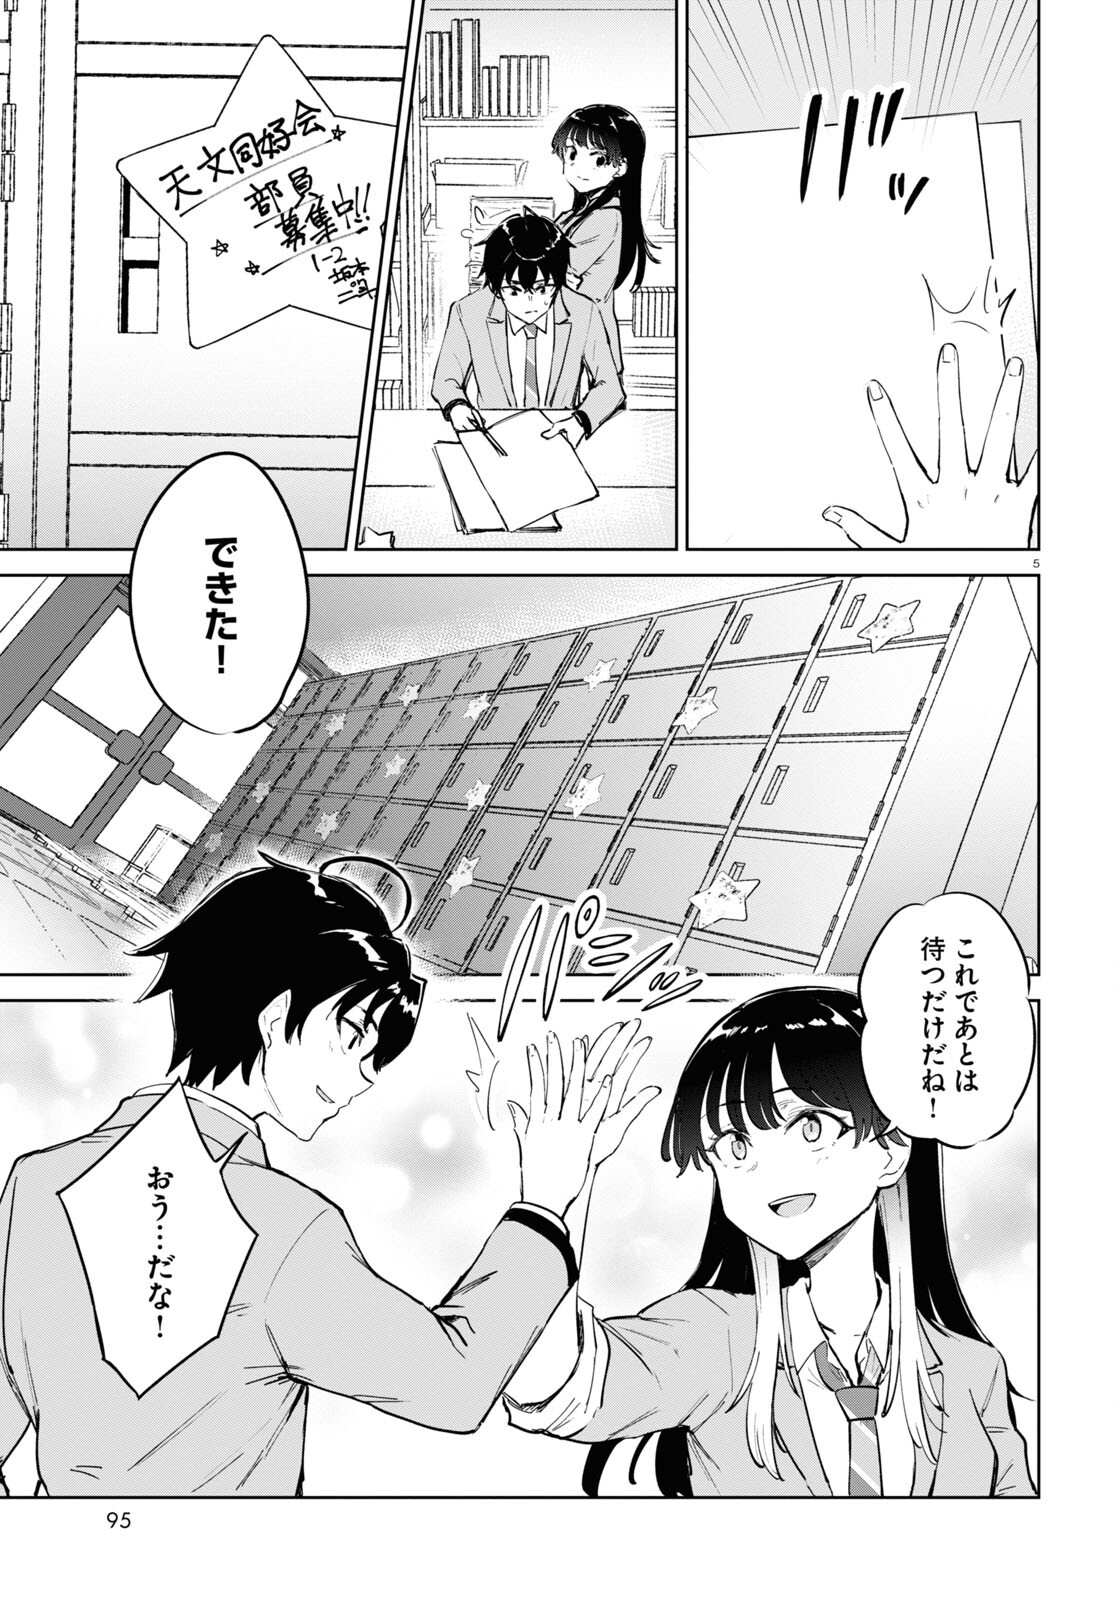 Ashita, Hadashi de Koi. - Chapter 3 - Page 5